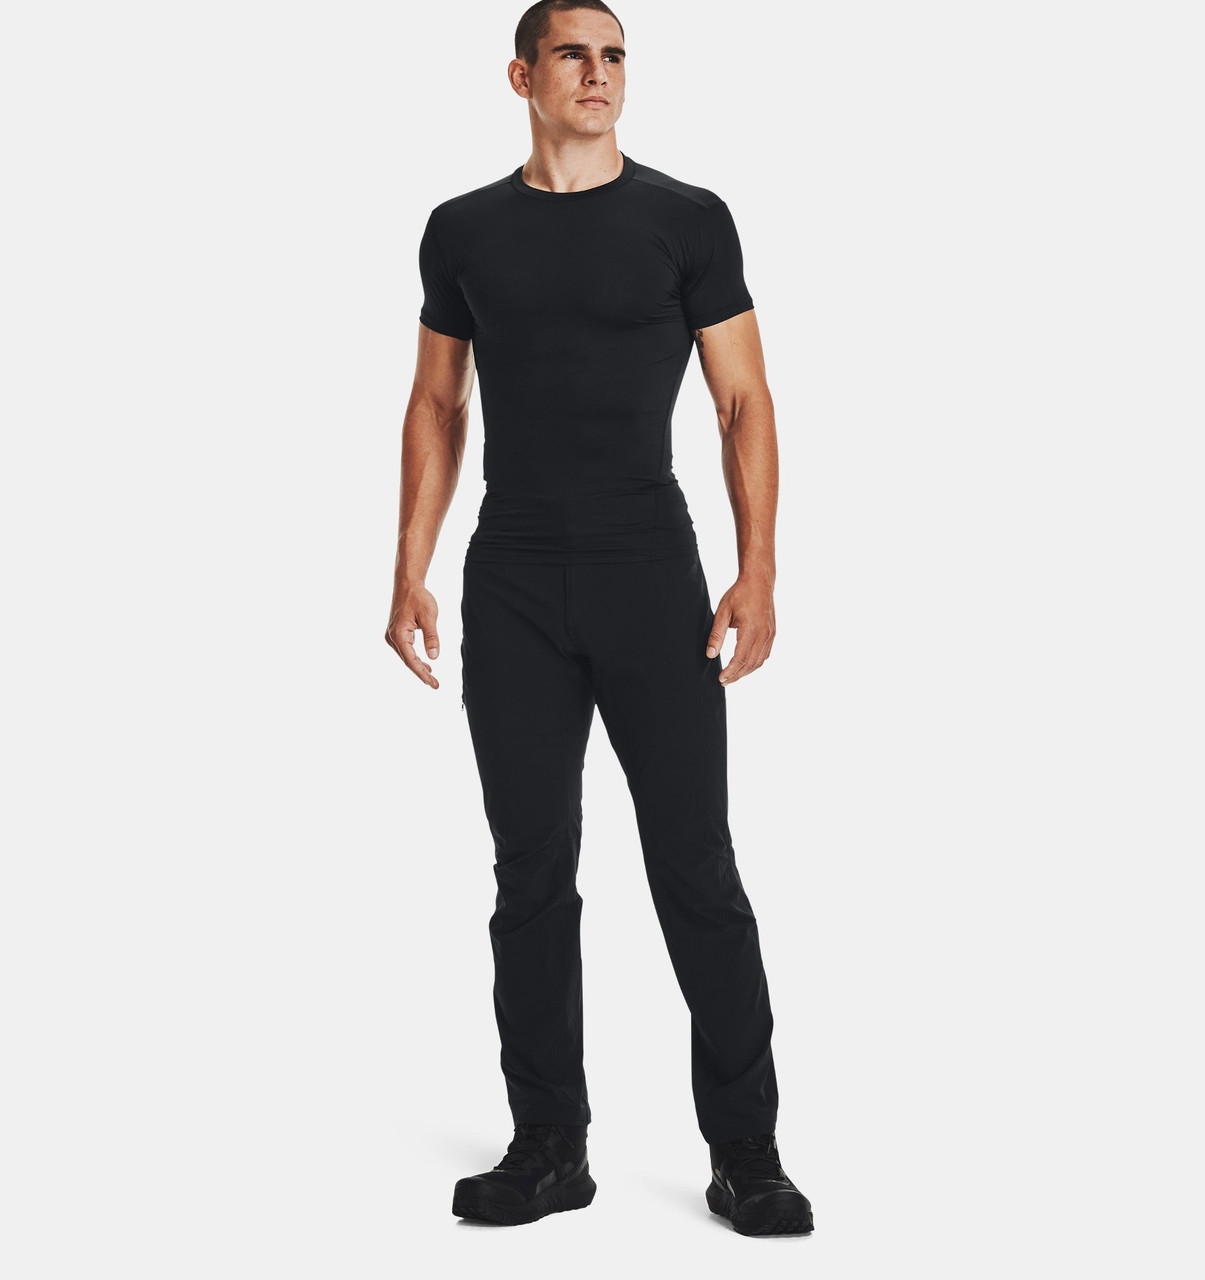 UnderArmour Tactical HeatGear Compression t-shirt, black